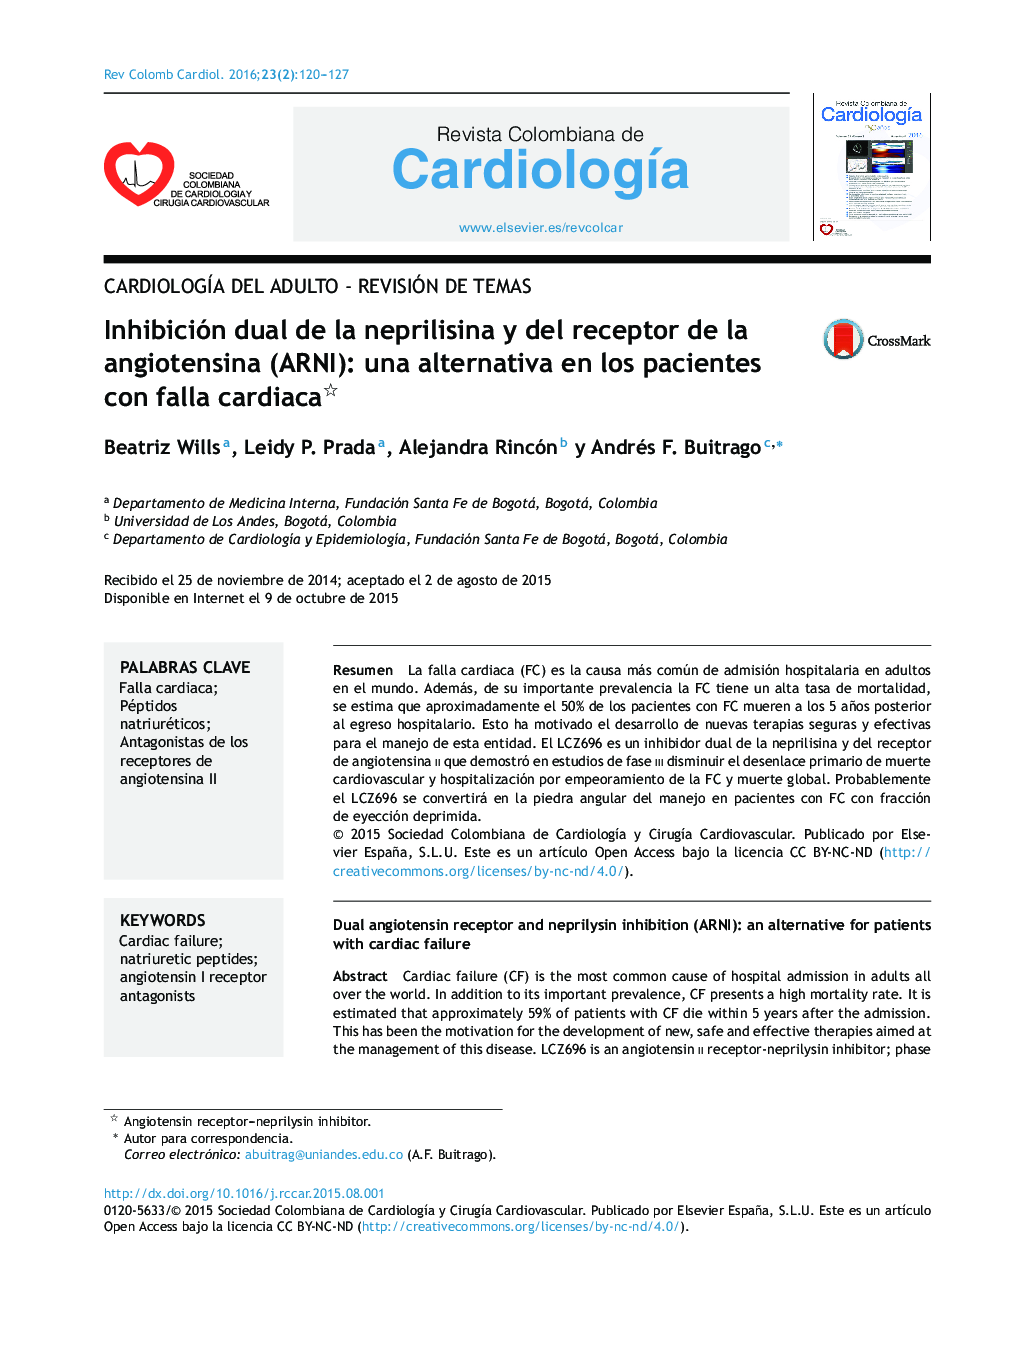 Inhibición dual de la neprilisina y del receptor de la angiotensina (ARNI): una alternativa en los pacientes con falla cardiaca 